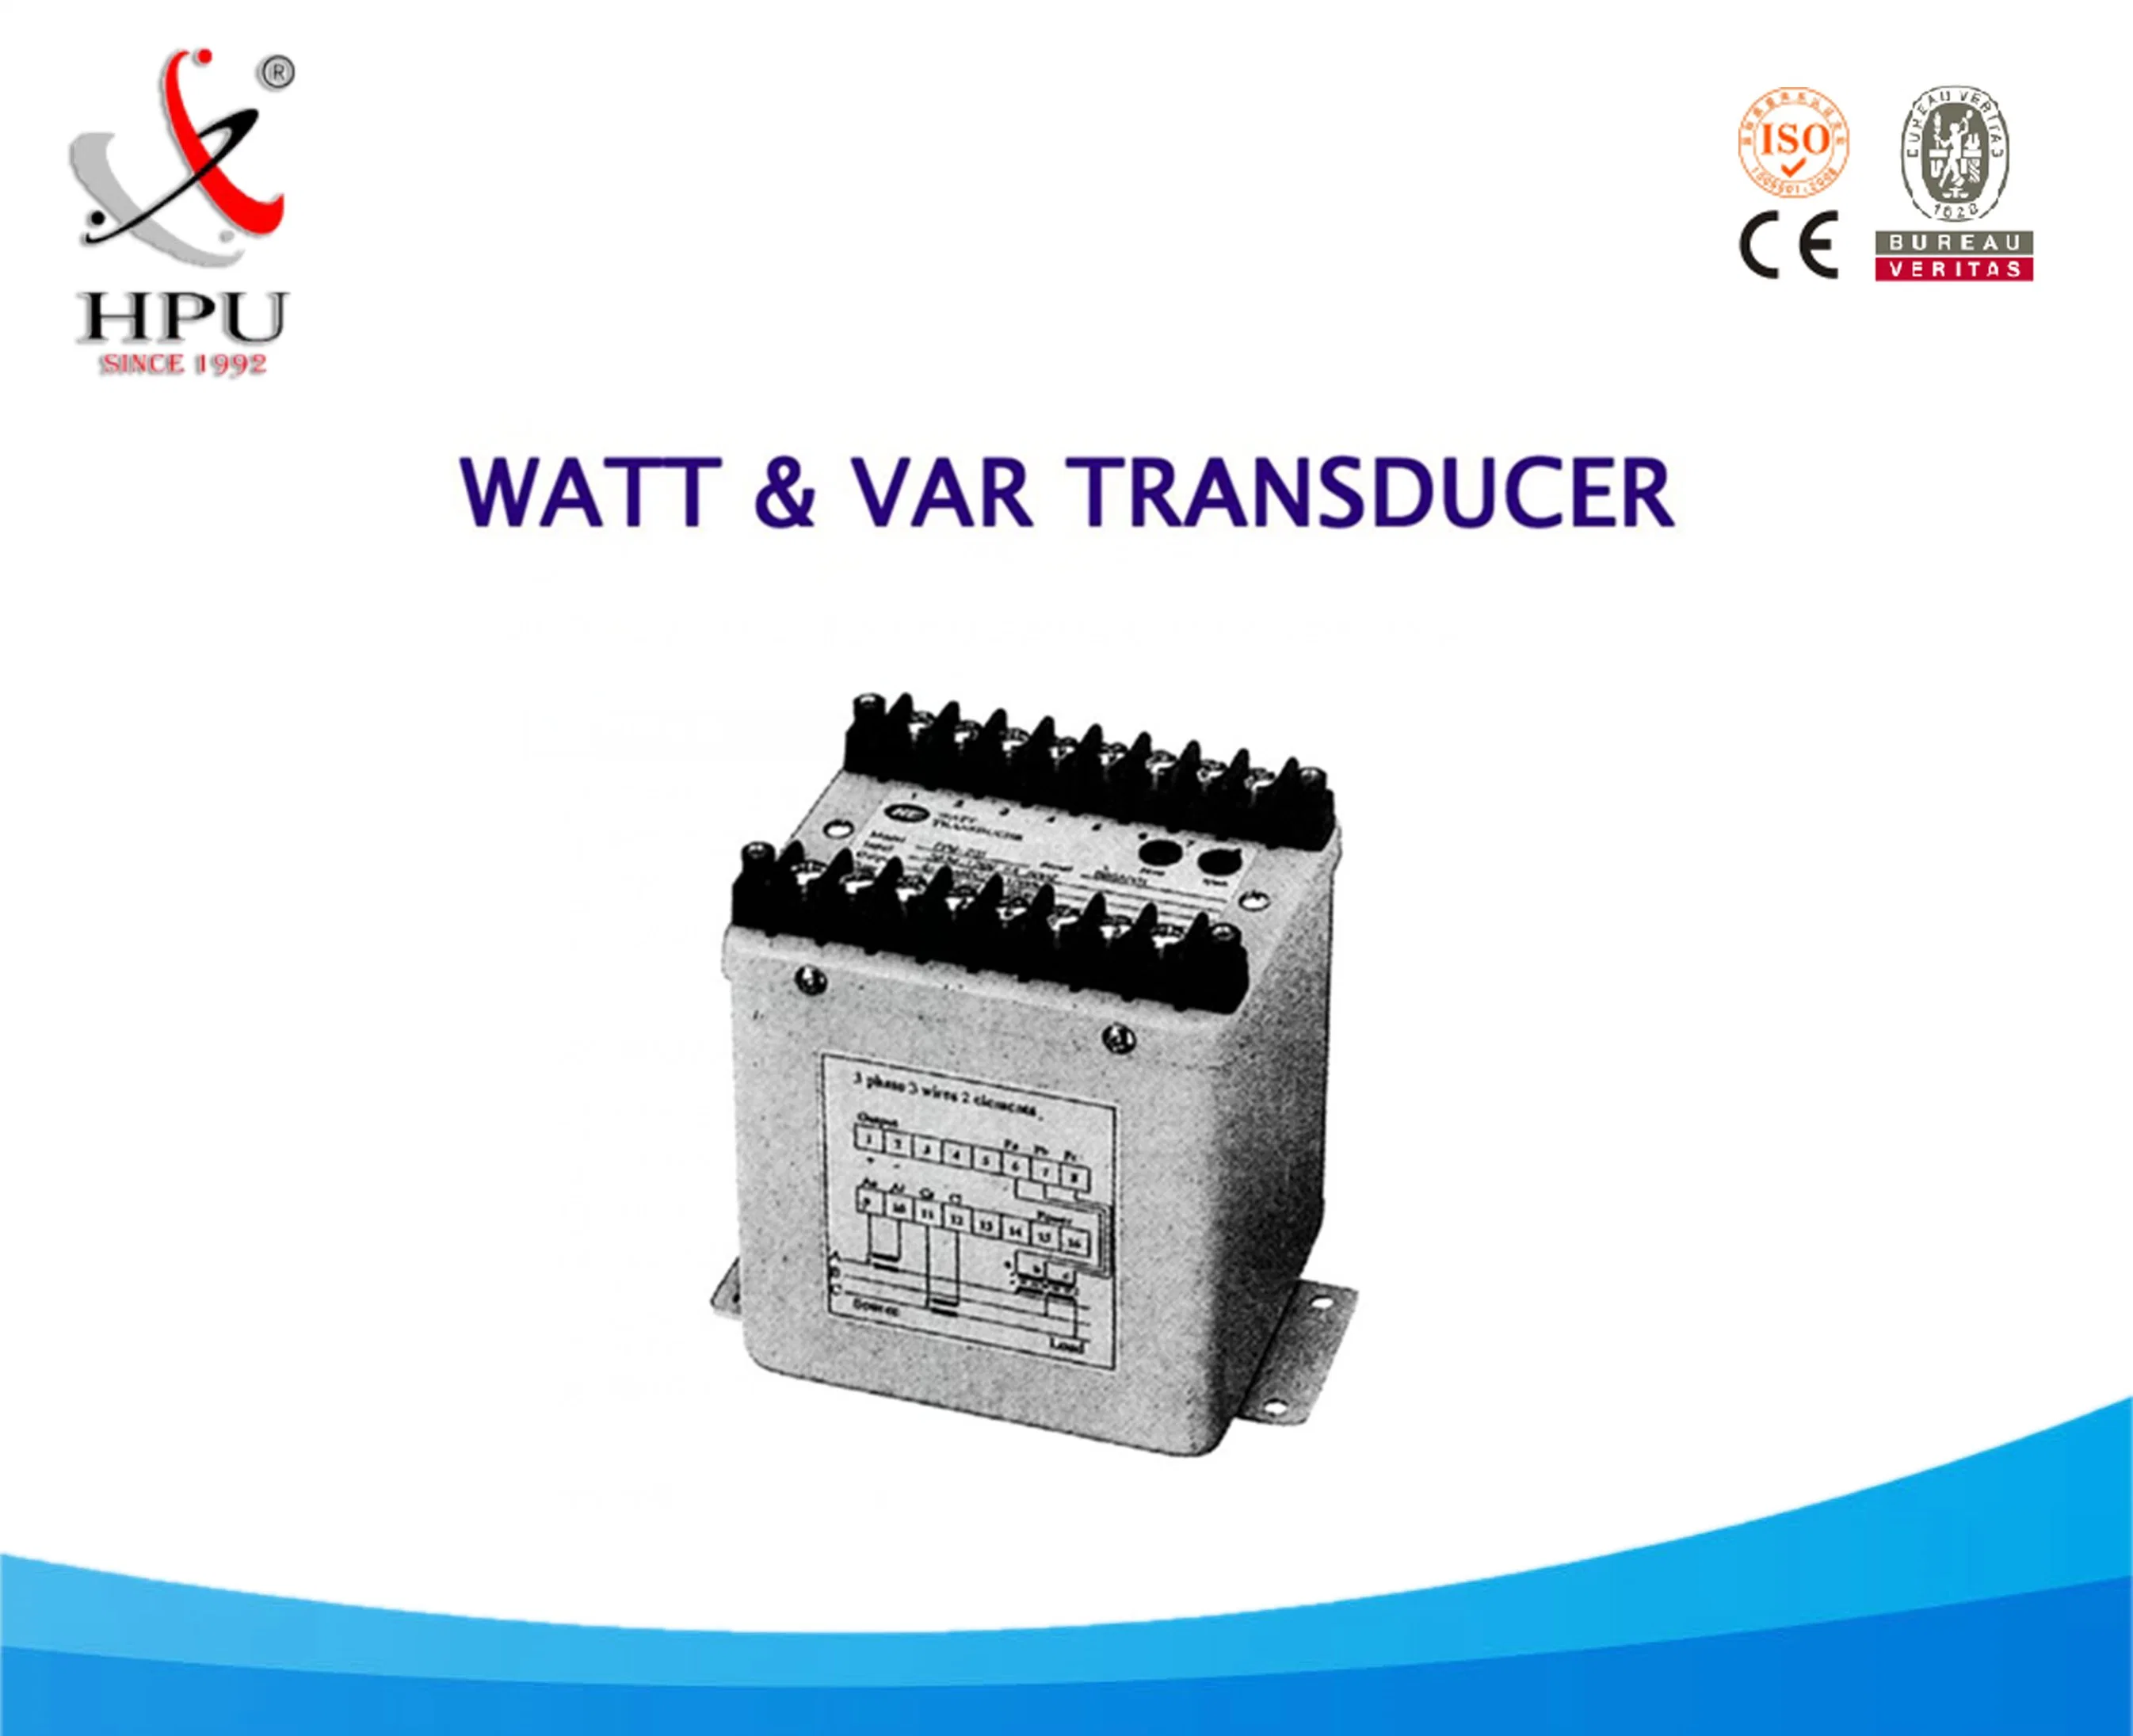 Fp-Watt & Var Transducer for Power Plant